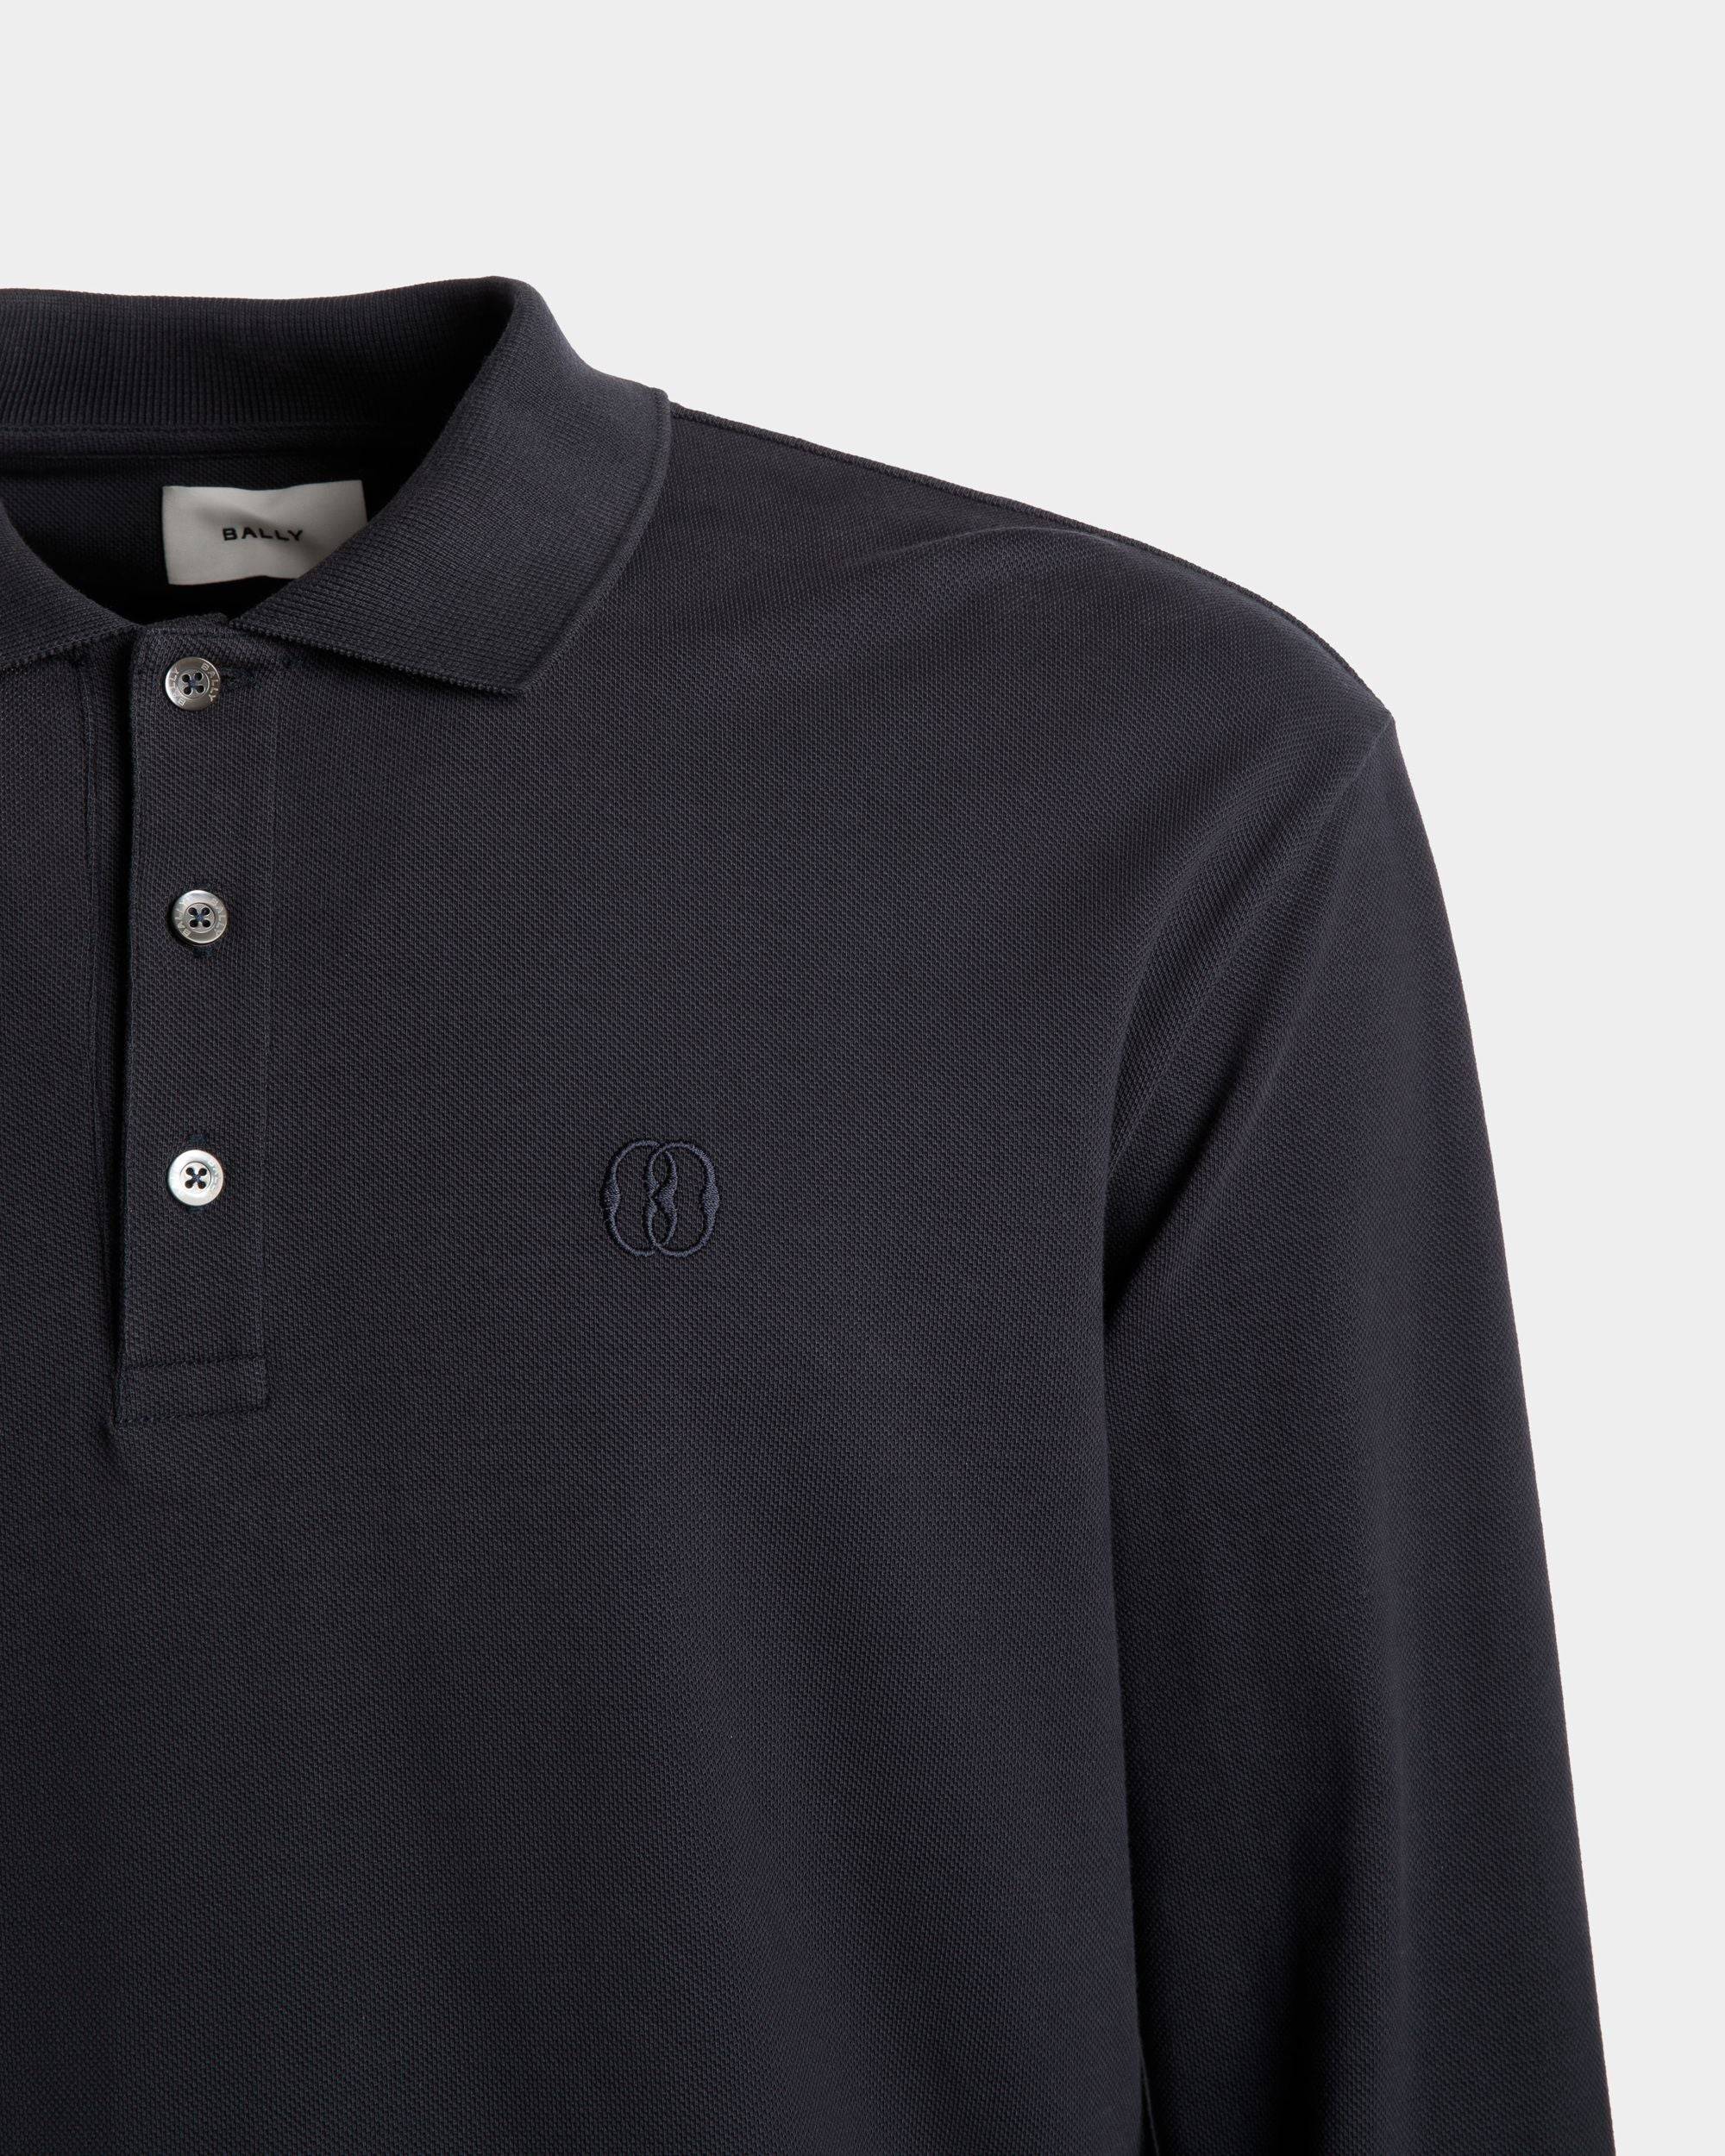 Langarm-Poloshirt | Polohemd für Herren | Baumwolle in Mitternachtsblau | Bally | Model getragen Detail